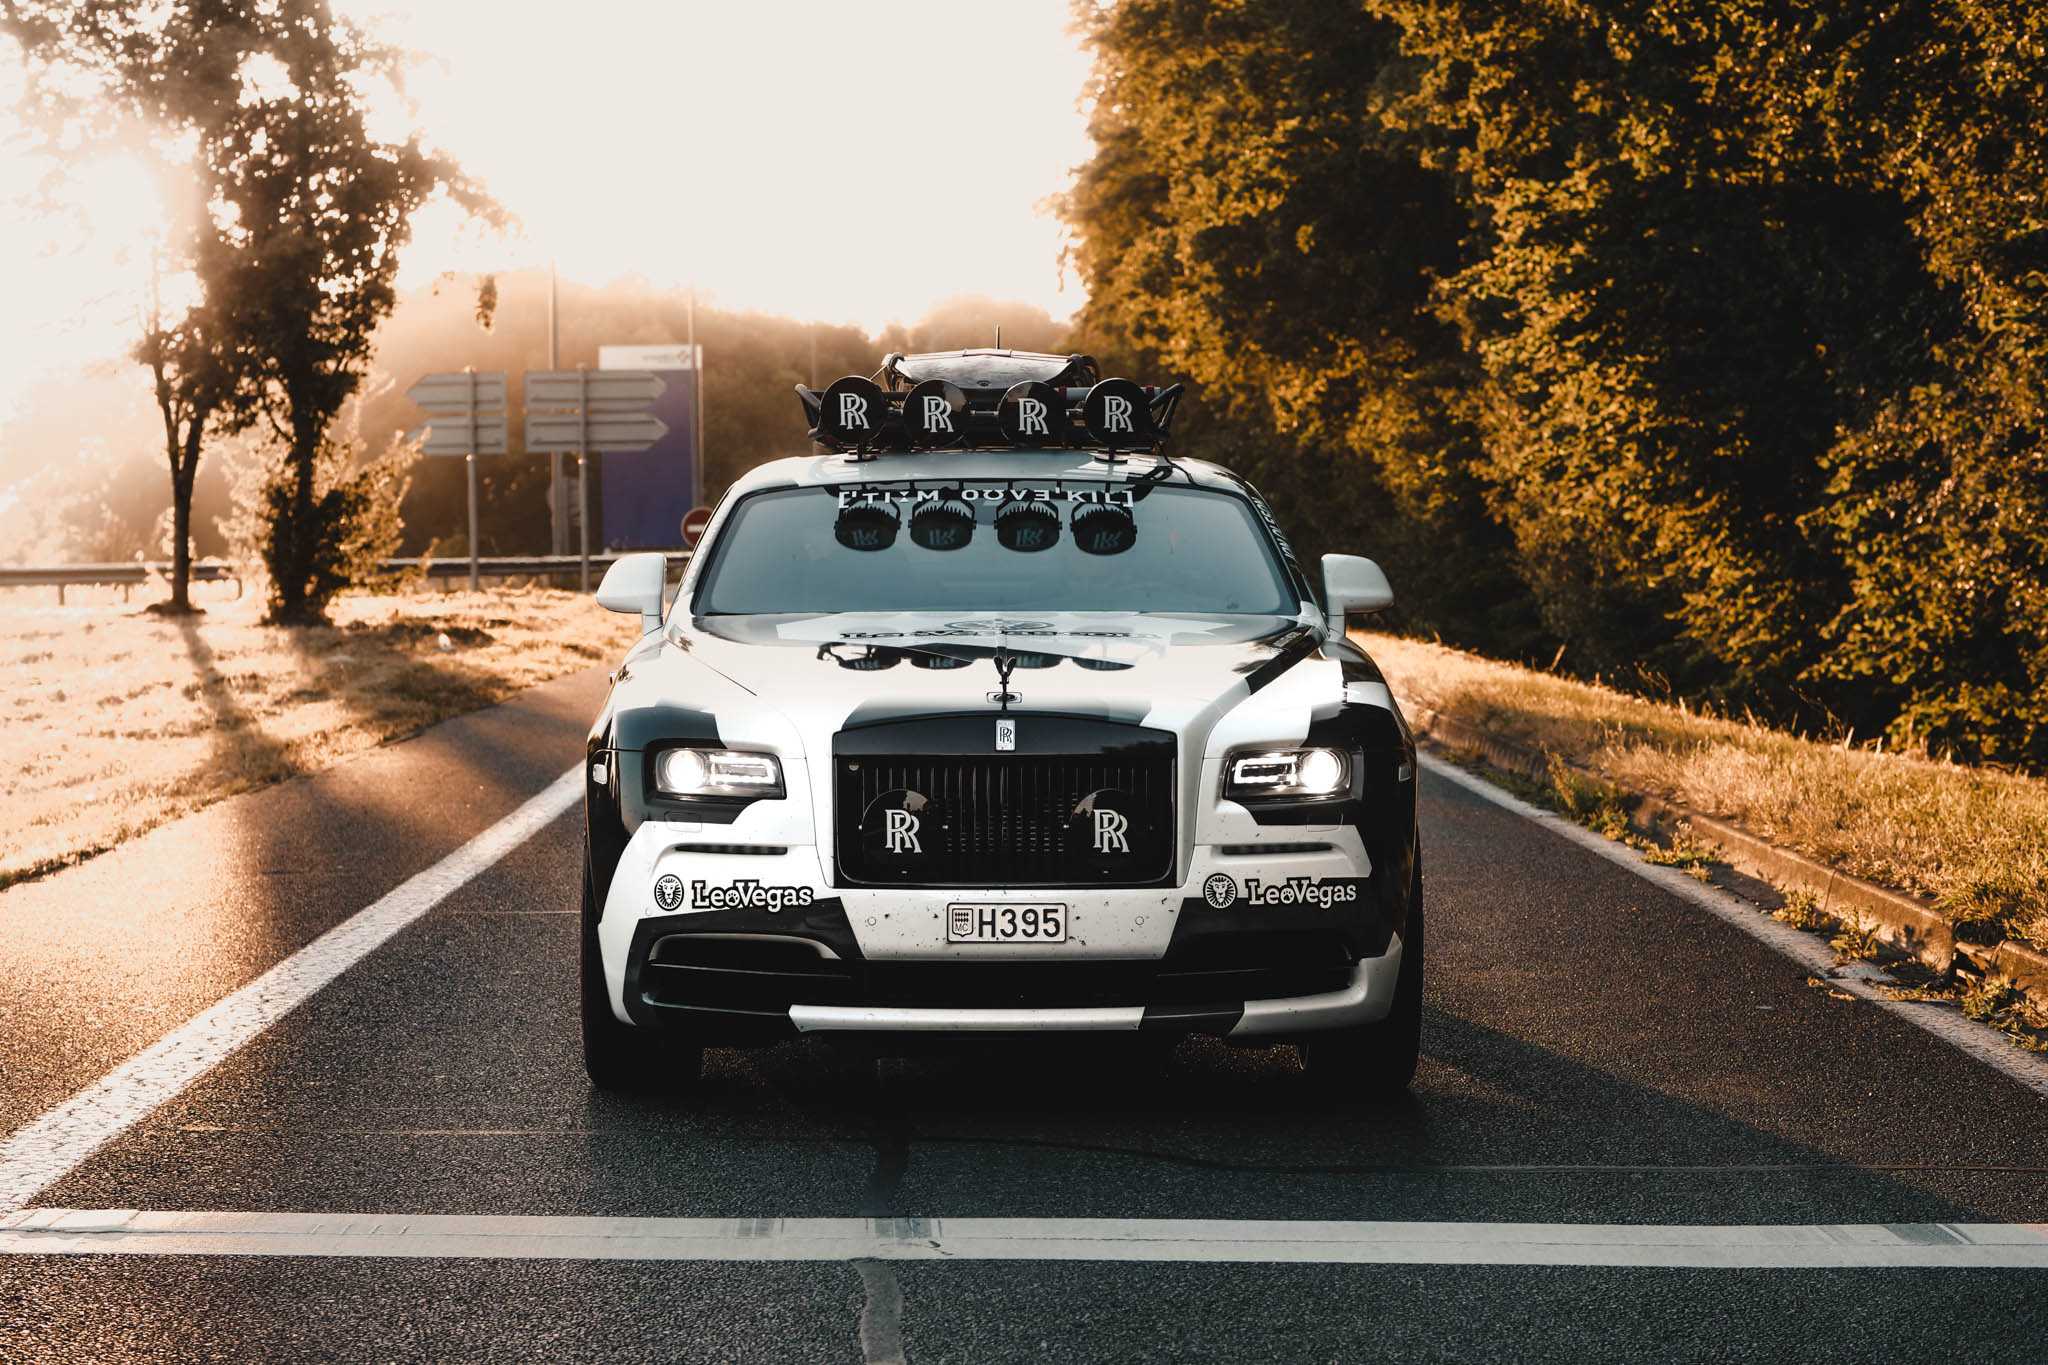 Rolls Royce Hd Wallpapers - Jon Olsson Rolls Royce , HD Wallpaper & Backgrounds